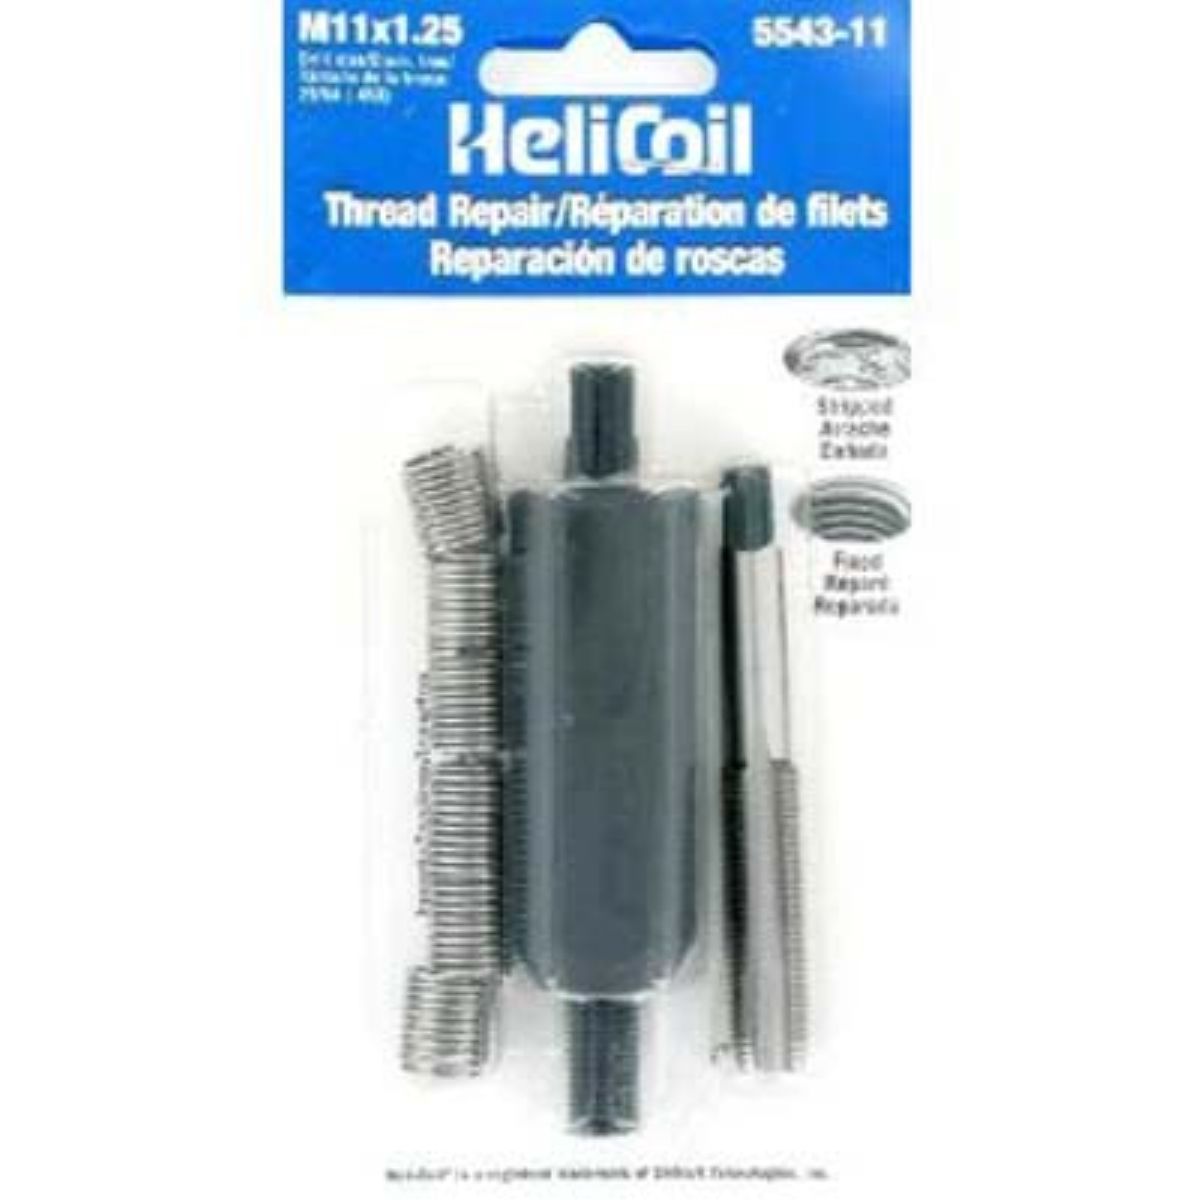 17pcs Helicoil Type Steel Female Thread Repair Kit M11 x 1.25 Twist Drill Bits 